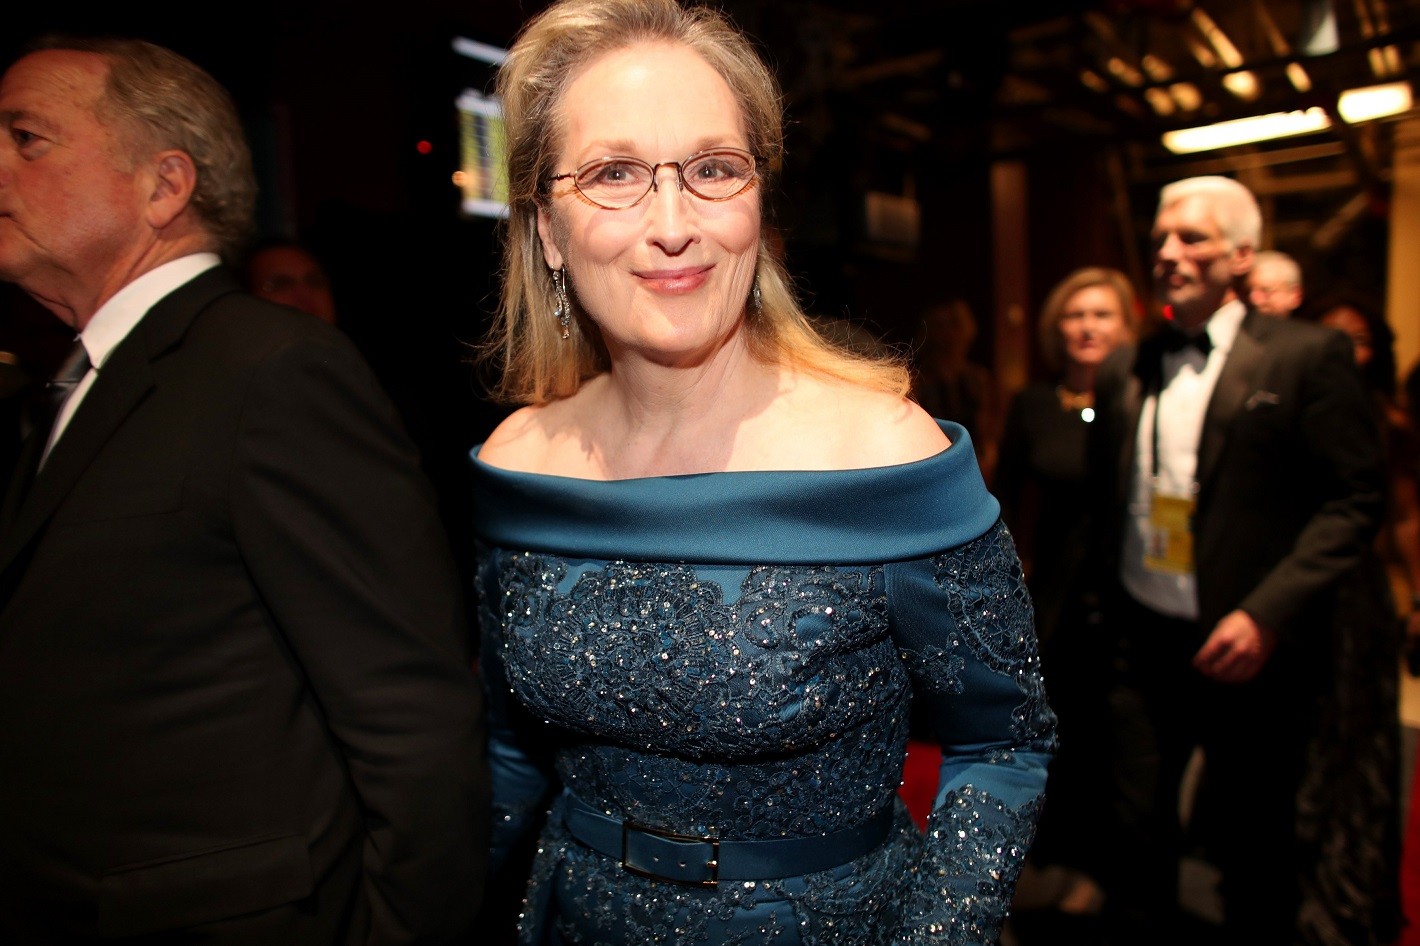 Oscary 2017: Meryl Streep odpowiada Lagerfeldowi i zakłada kreację… Eliego Saaba